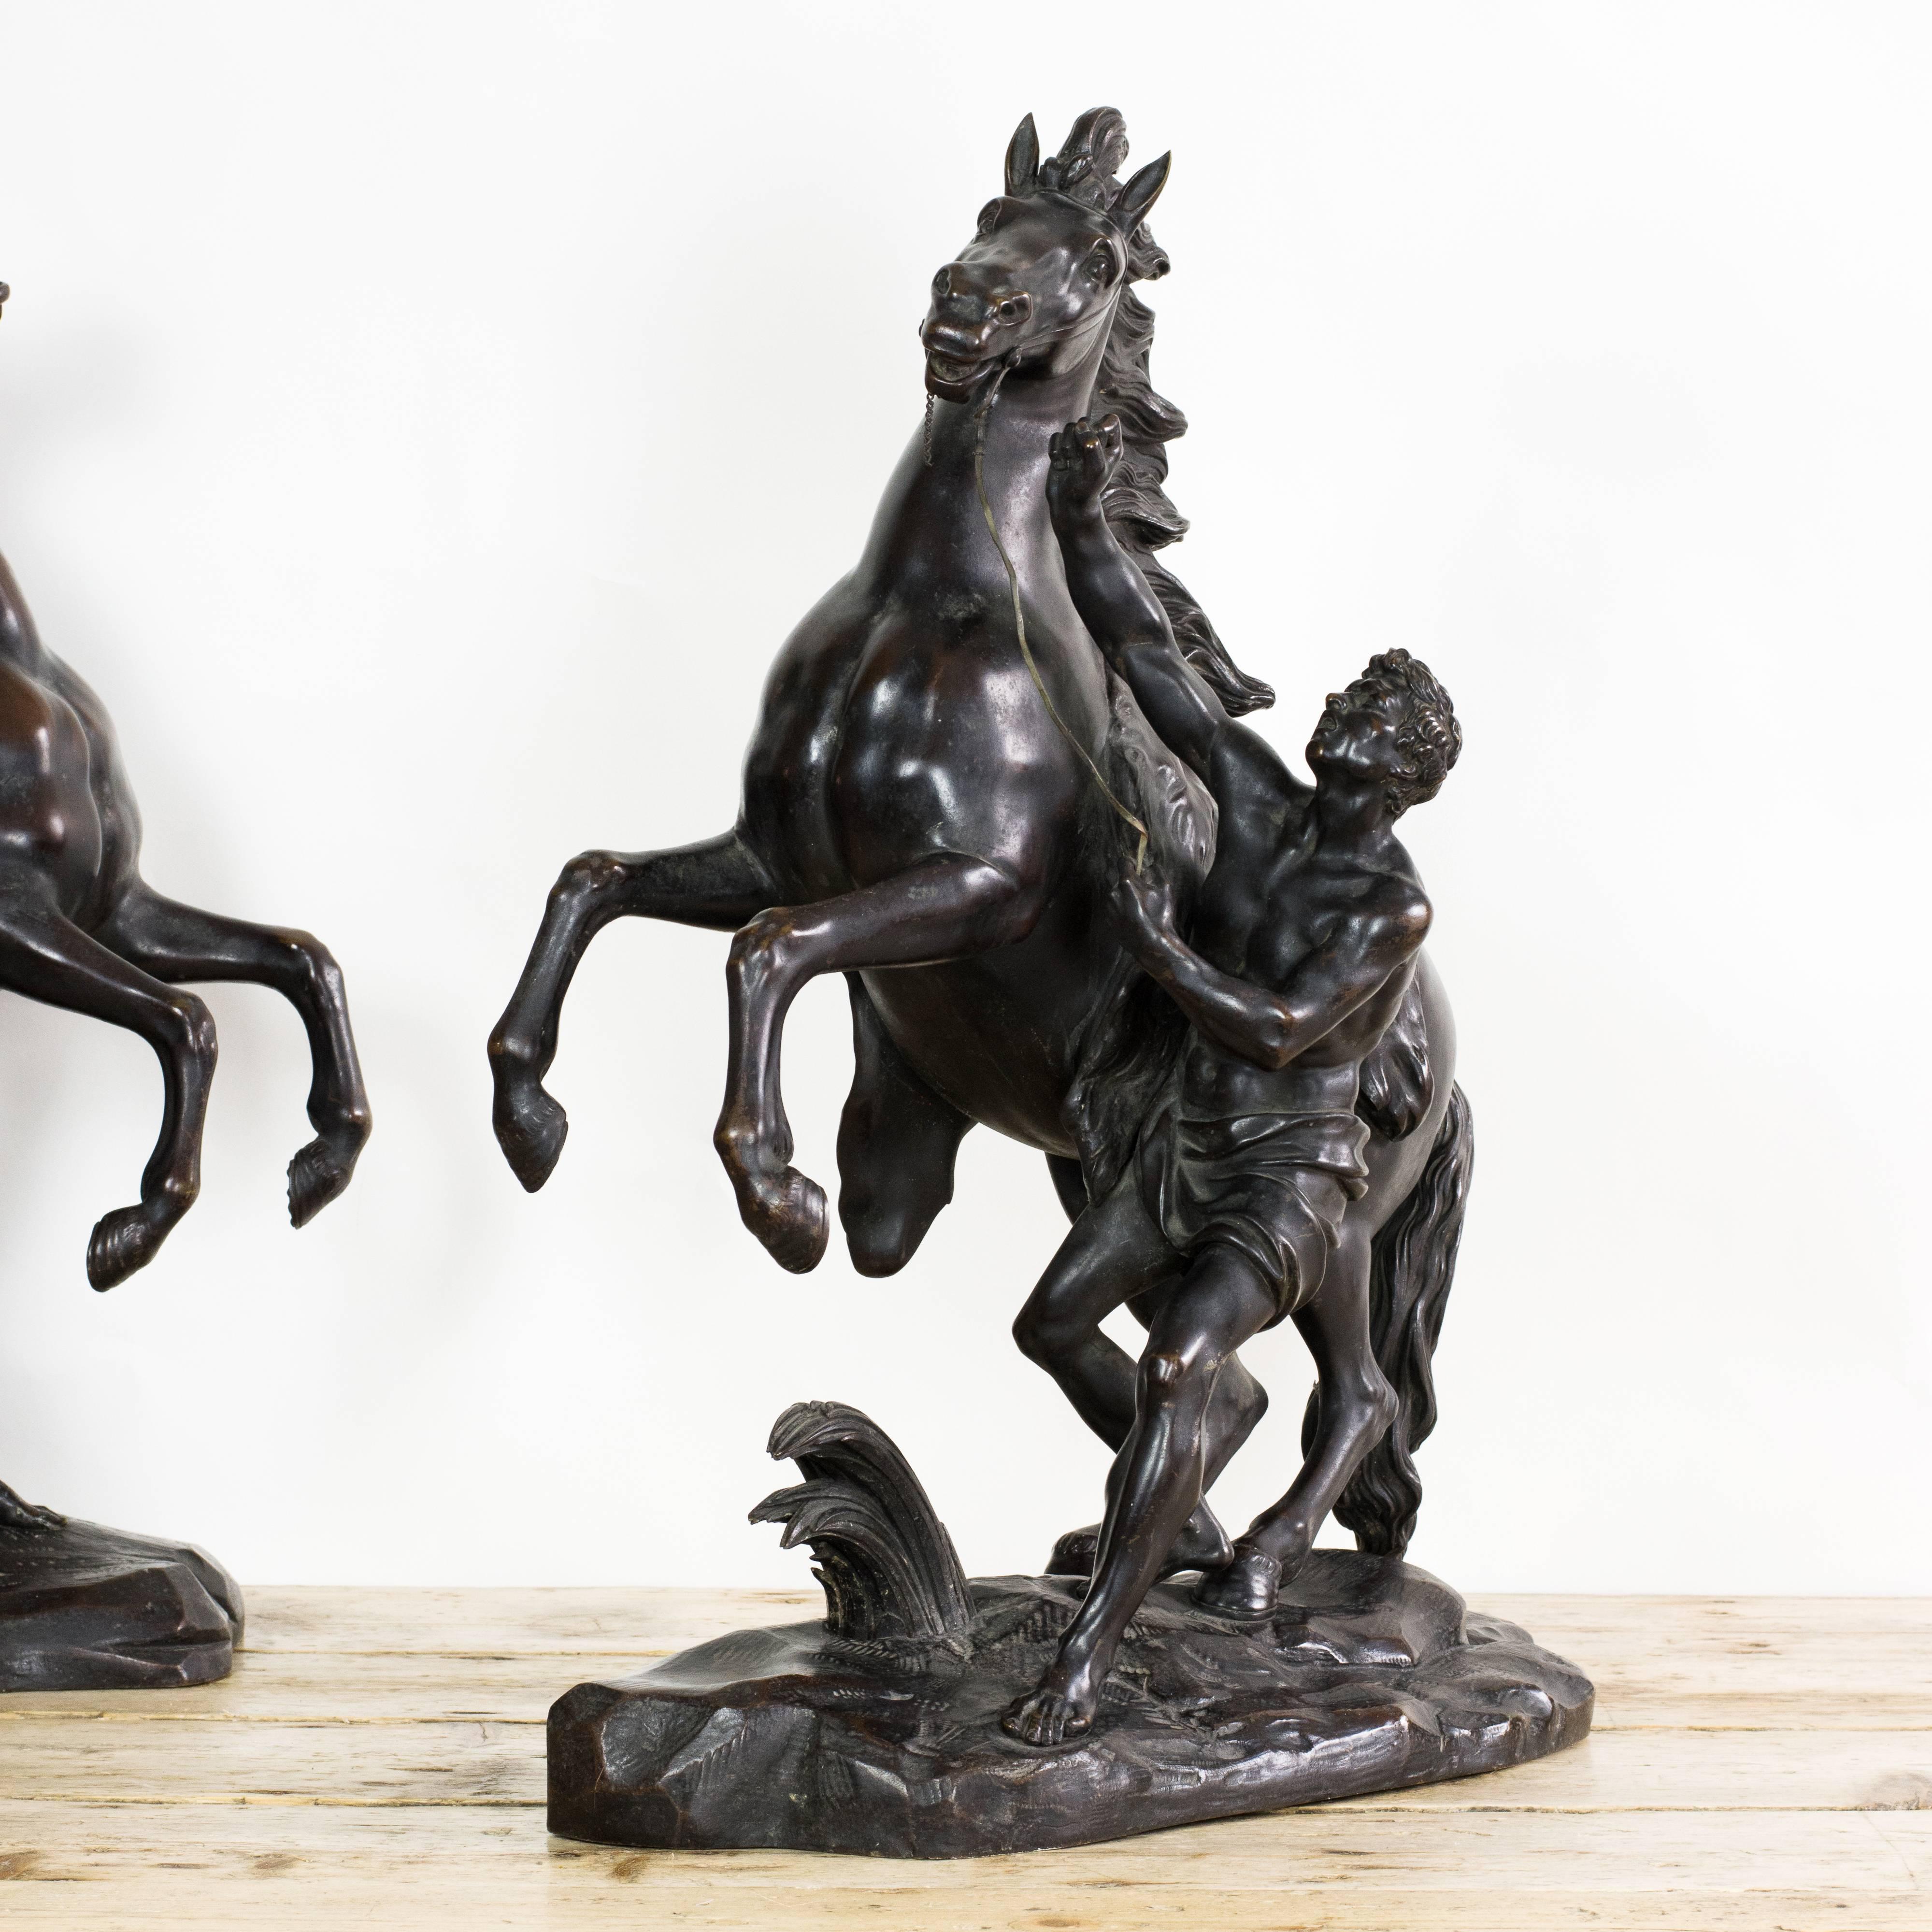 Paire de sculptures de chevaux Marley en bronze du milieu du XIXe siècle d'après Guillaume Coustou l'Ancien:: probablement françaises. 

Mesures : Hauteur 58cm:: largeur 52cm:: profondeur 23cm chacun.